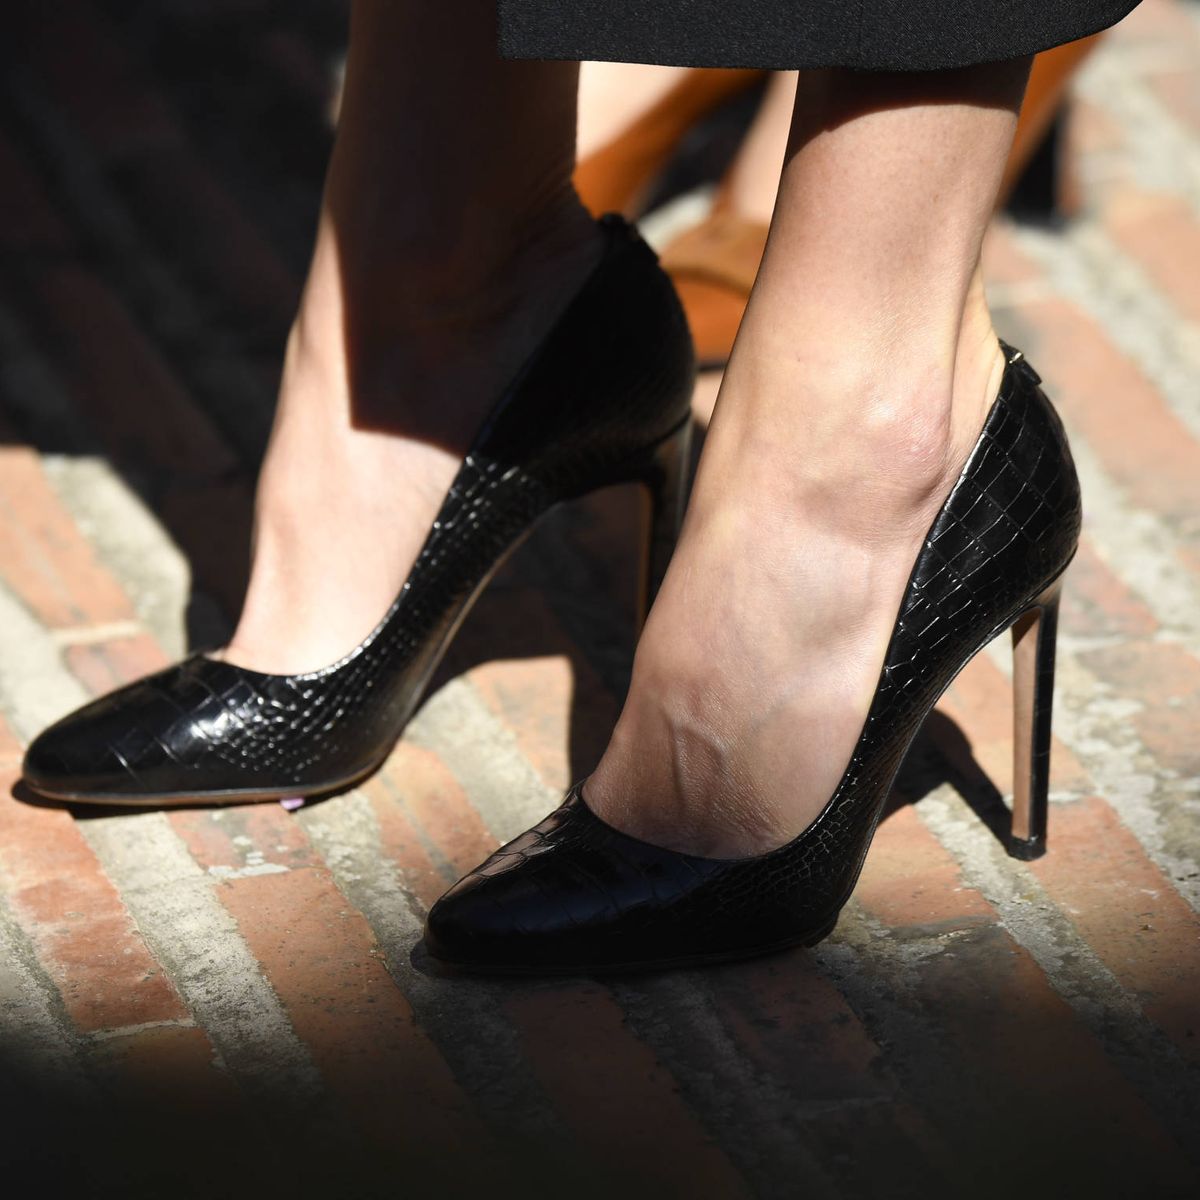 De Choo a Carolina Herrera: los zapatos más bonitos de Letizia este